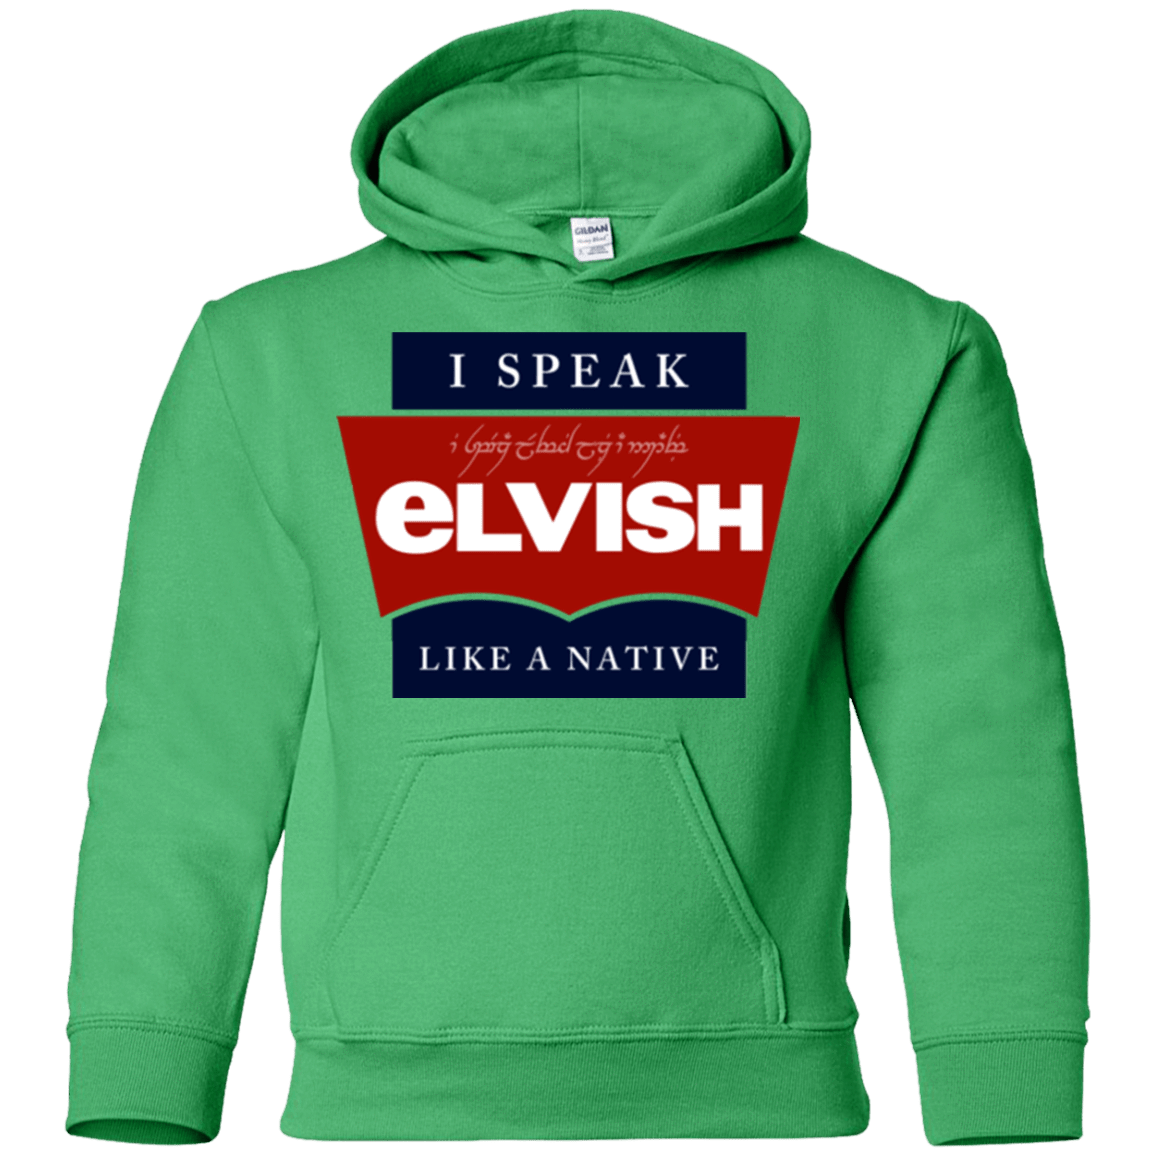 Sweatshirts Irish Green / YS I speak elvish Youth Hoodie